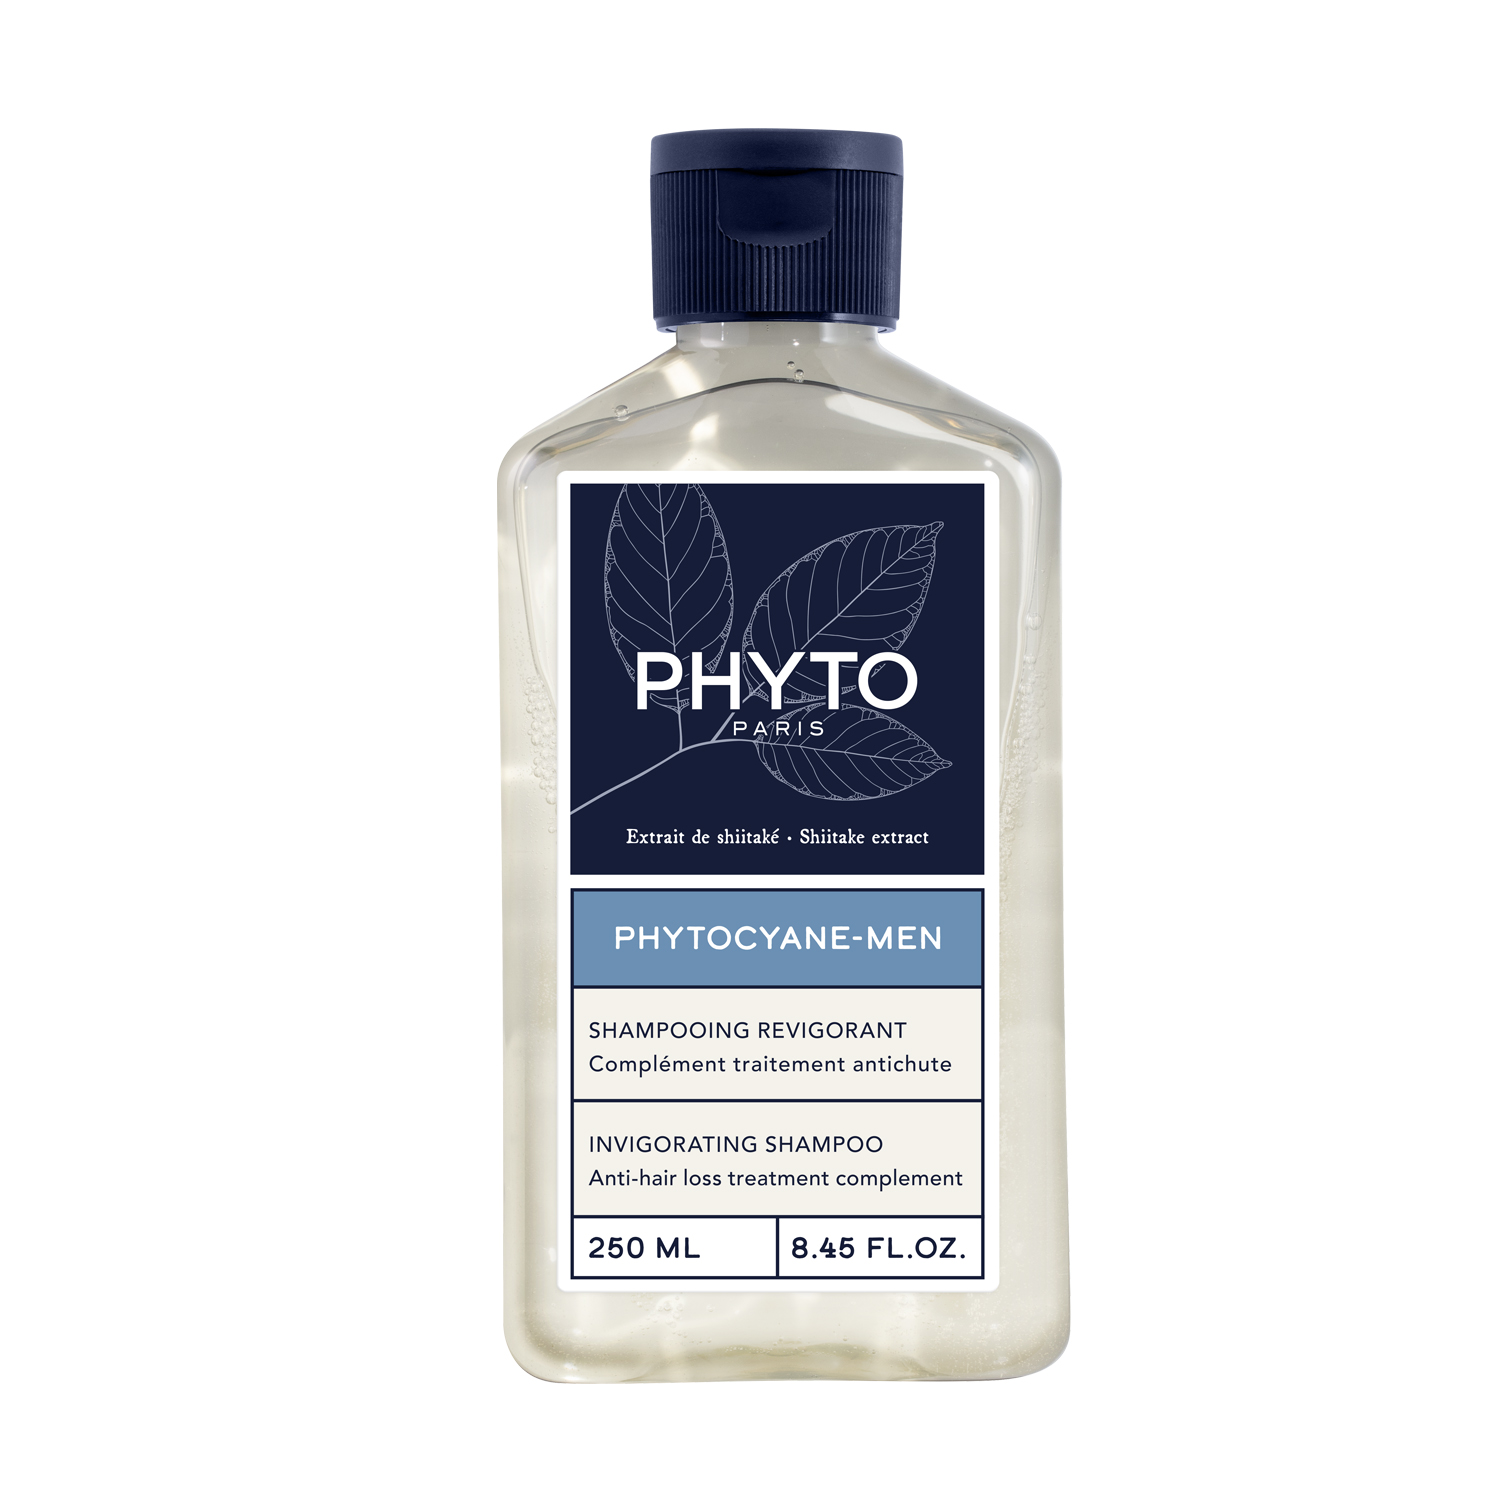 PHYTO PHYTOCYANE укрепляющий шампунь для волос 250мл phyto набор для женщин сыворотка от выпадения волос 12x5 мл укрепляющий шампунь 100 мл phyto phytocyane